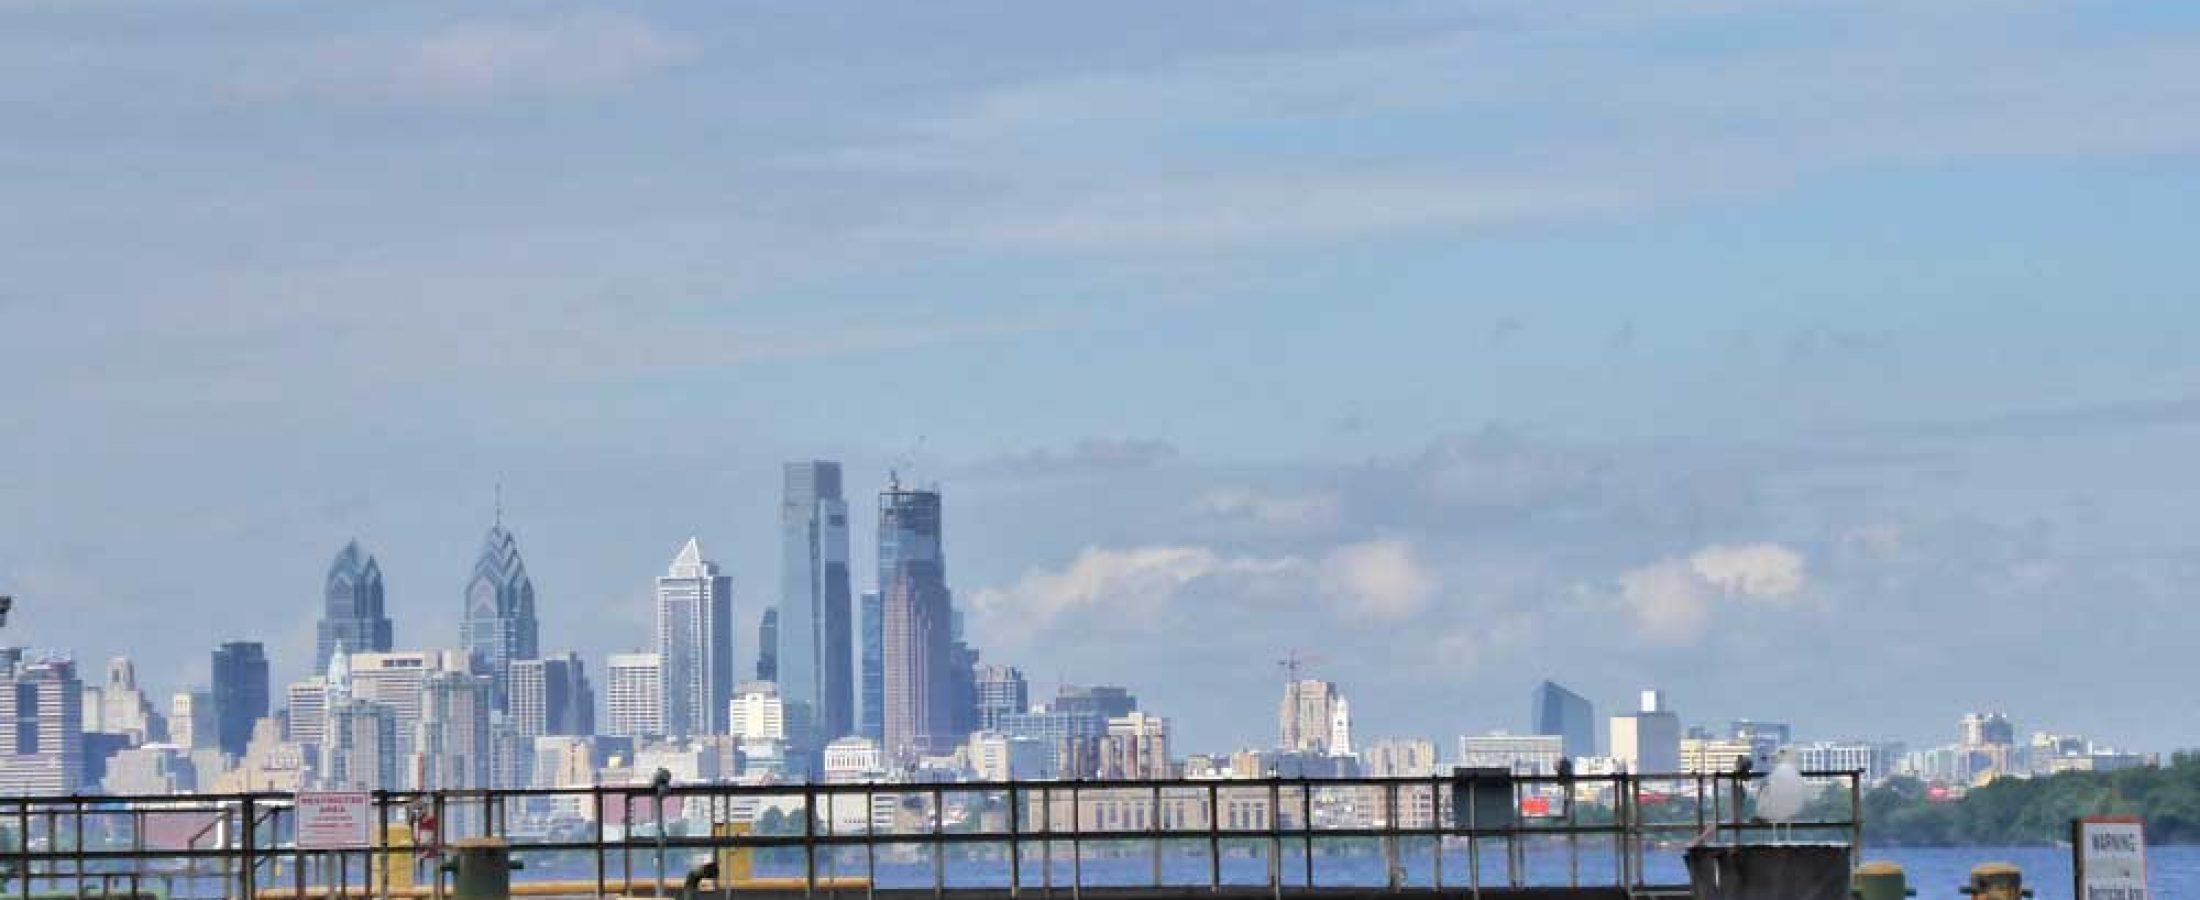 Ring-billed gull, Philadelphia skyline